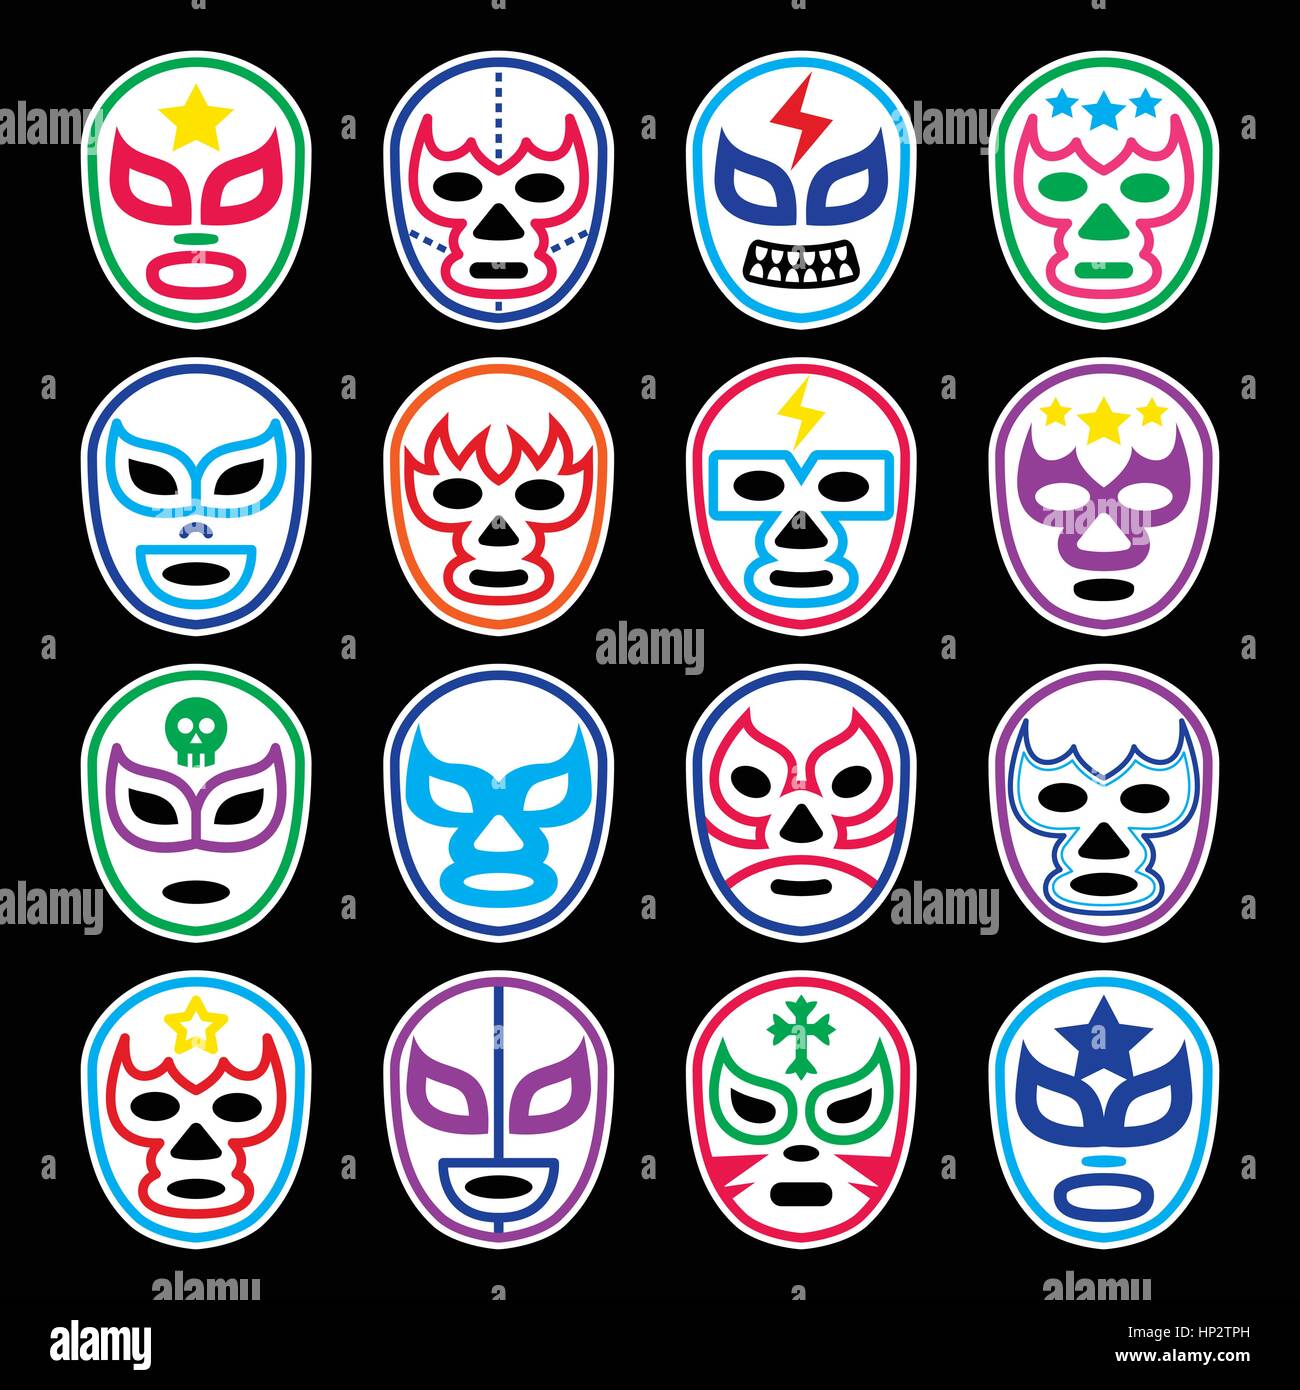 Les masques de catch mexicain de Lucha Libre icônes sur noir. Vector icons set de masques portés lors des combats de lutte au Mexique isolated on black Illustration de Vecteur